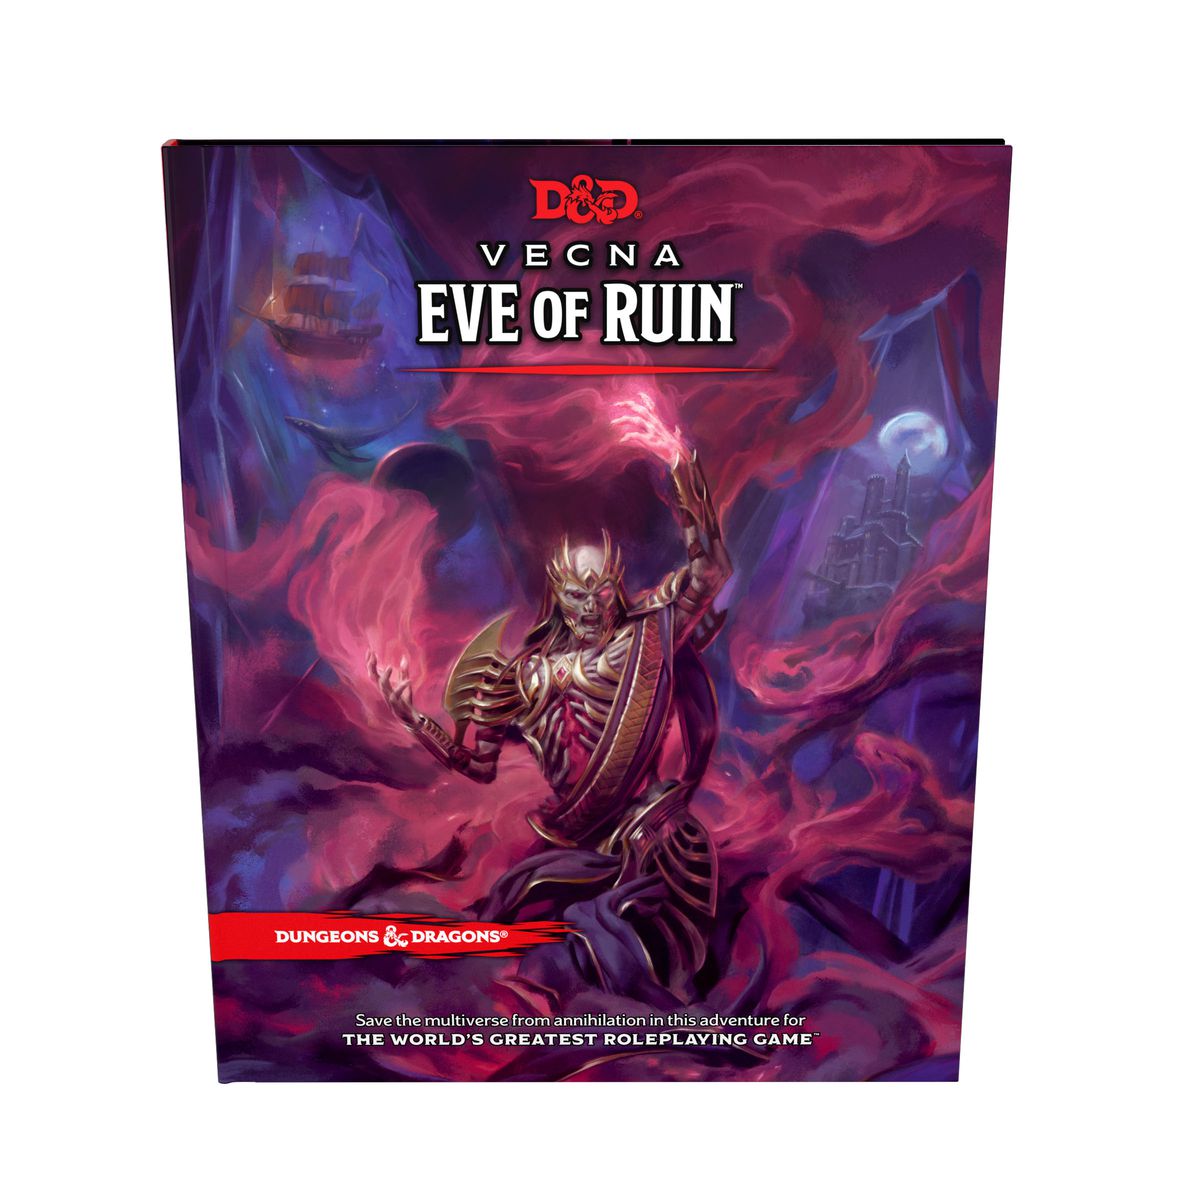 En omslagsbild för Vecna: Eve of Ruin med Vecna ​​som förtrollar.